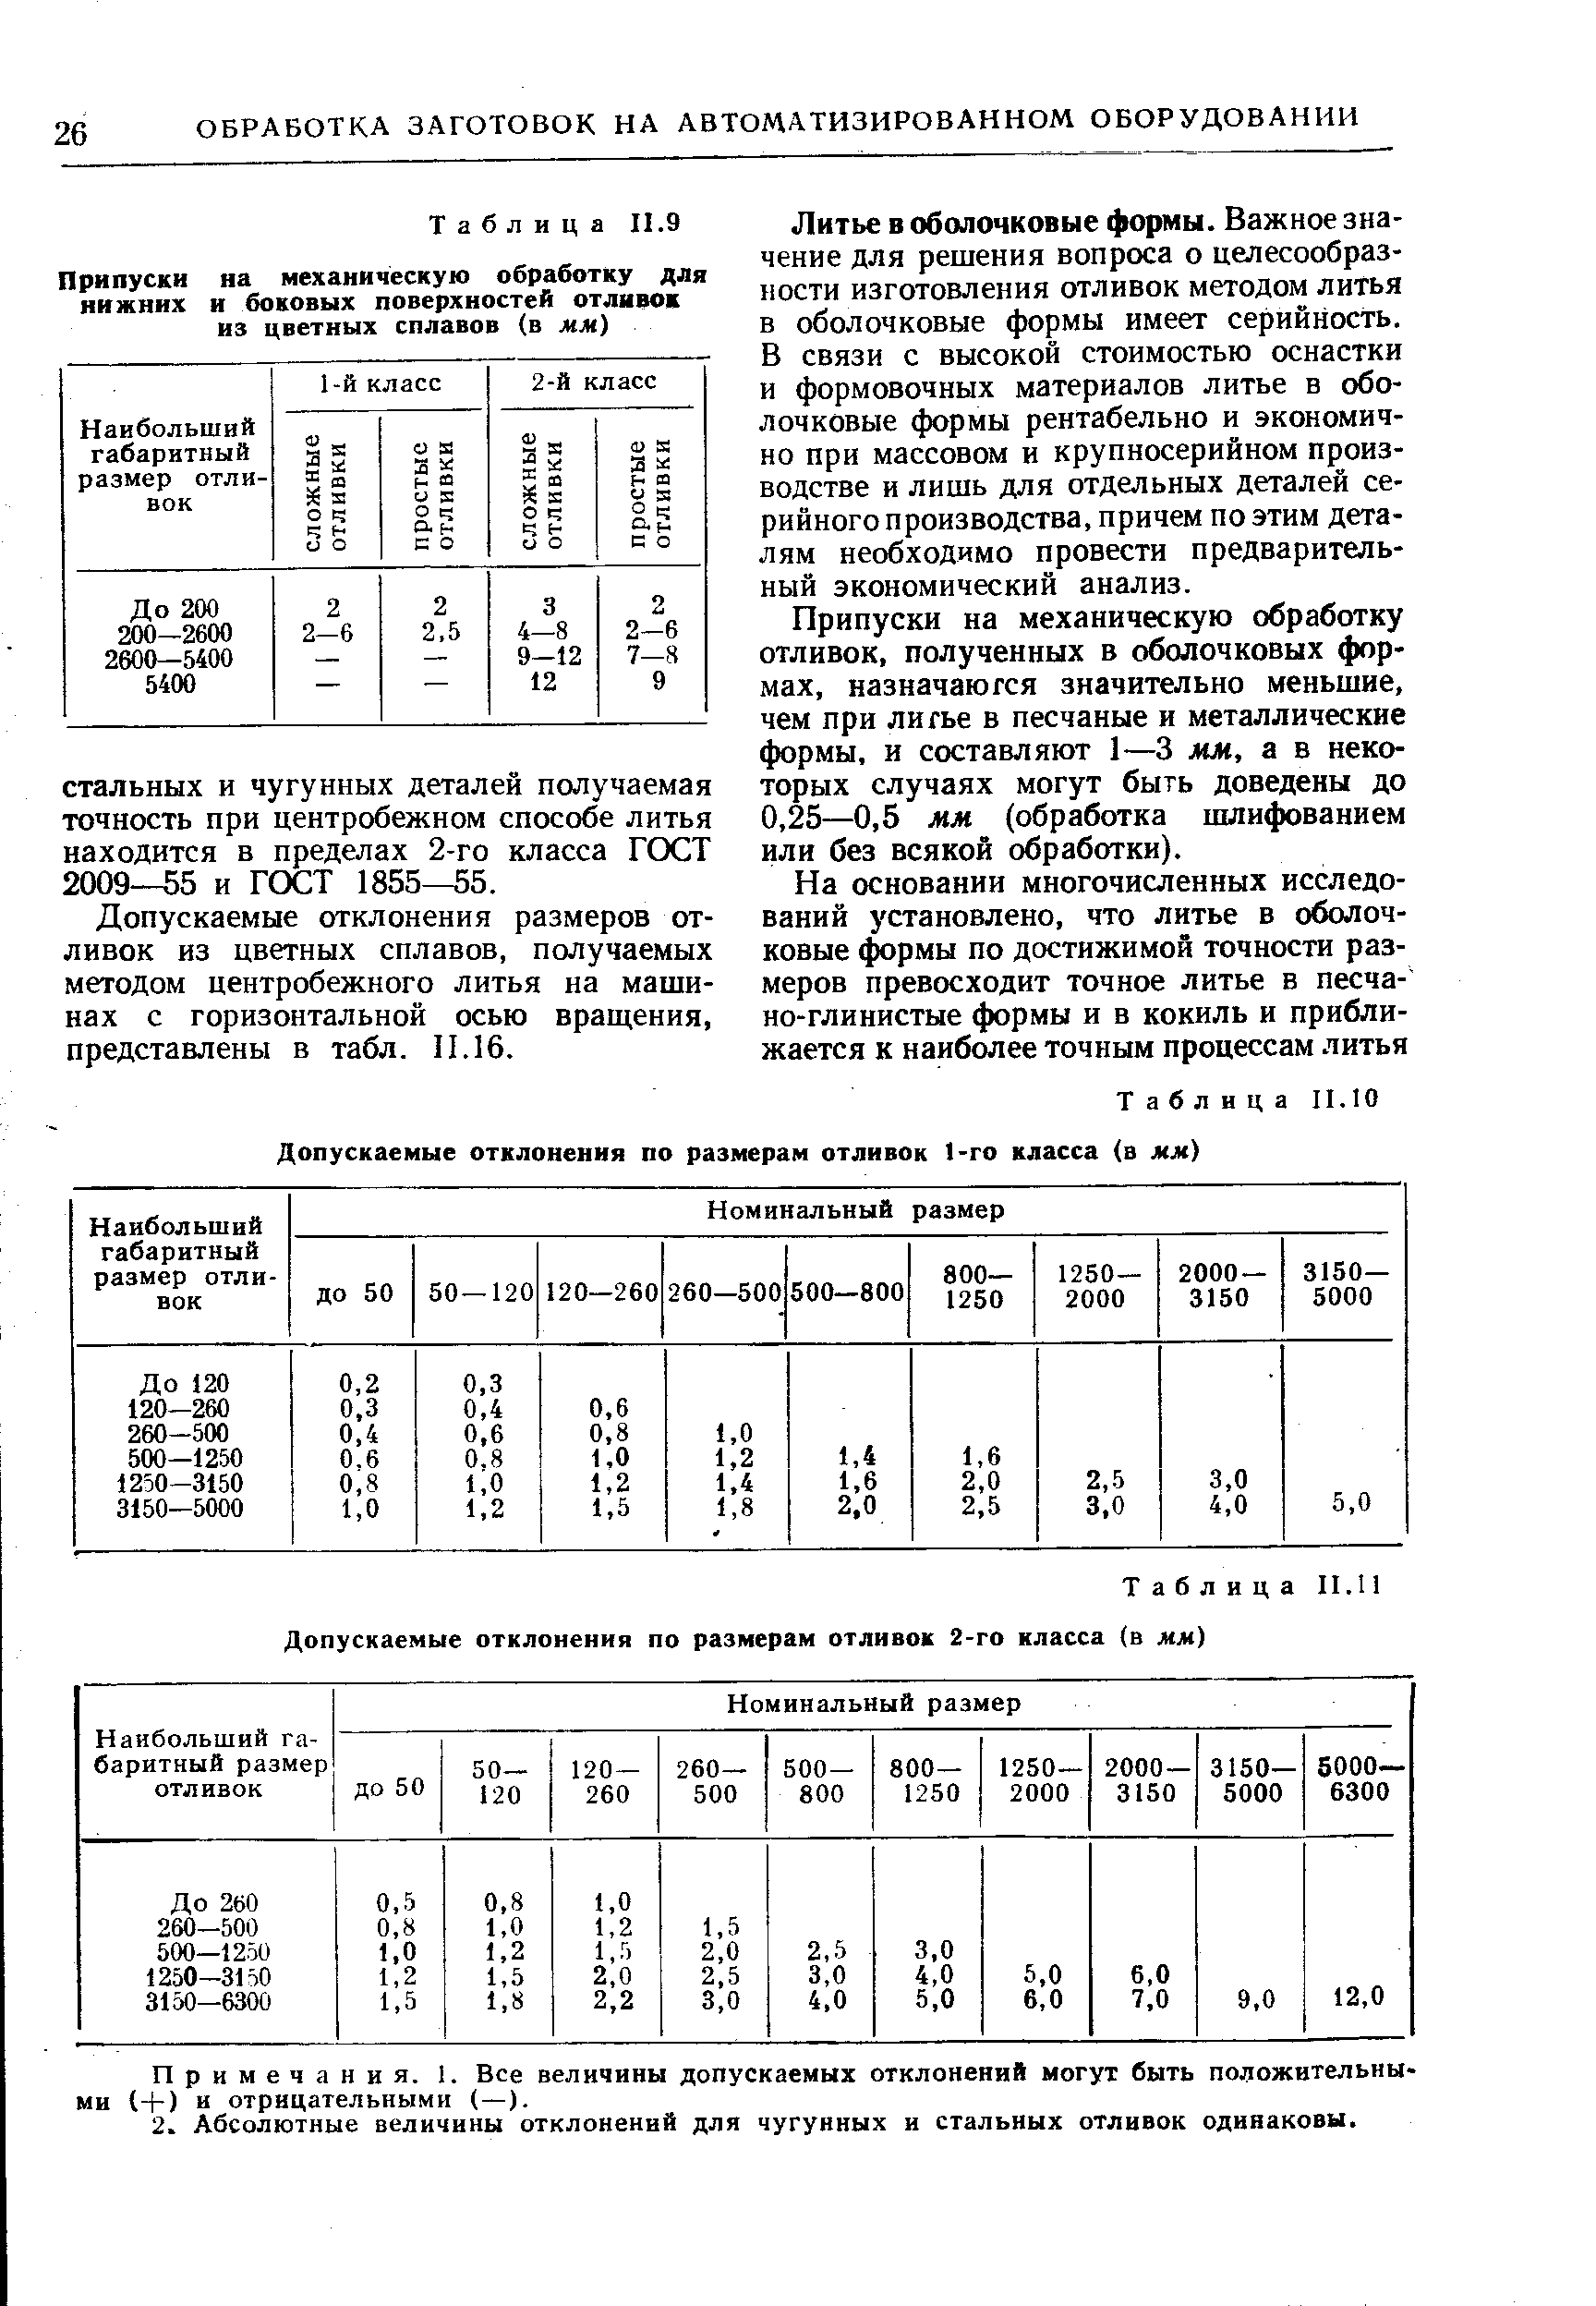 Таблица II.10 Допускаемые отклонения по размерам отливок го класса (а мм)
